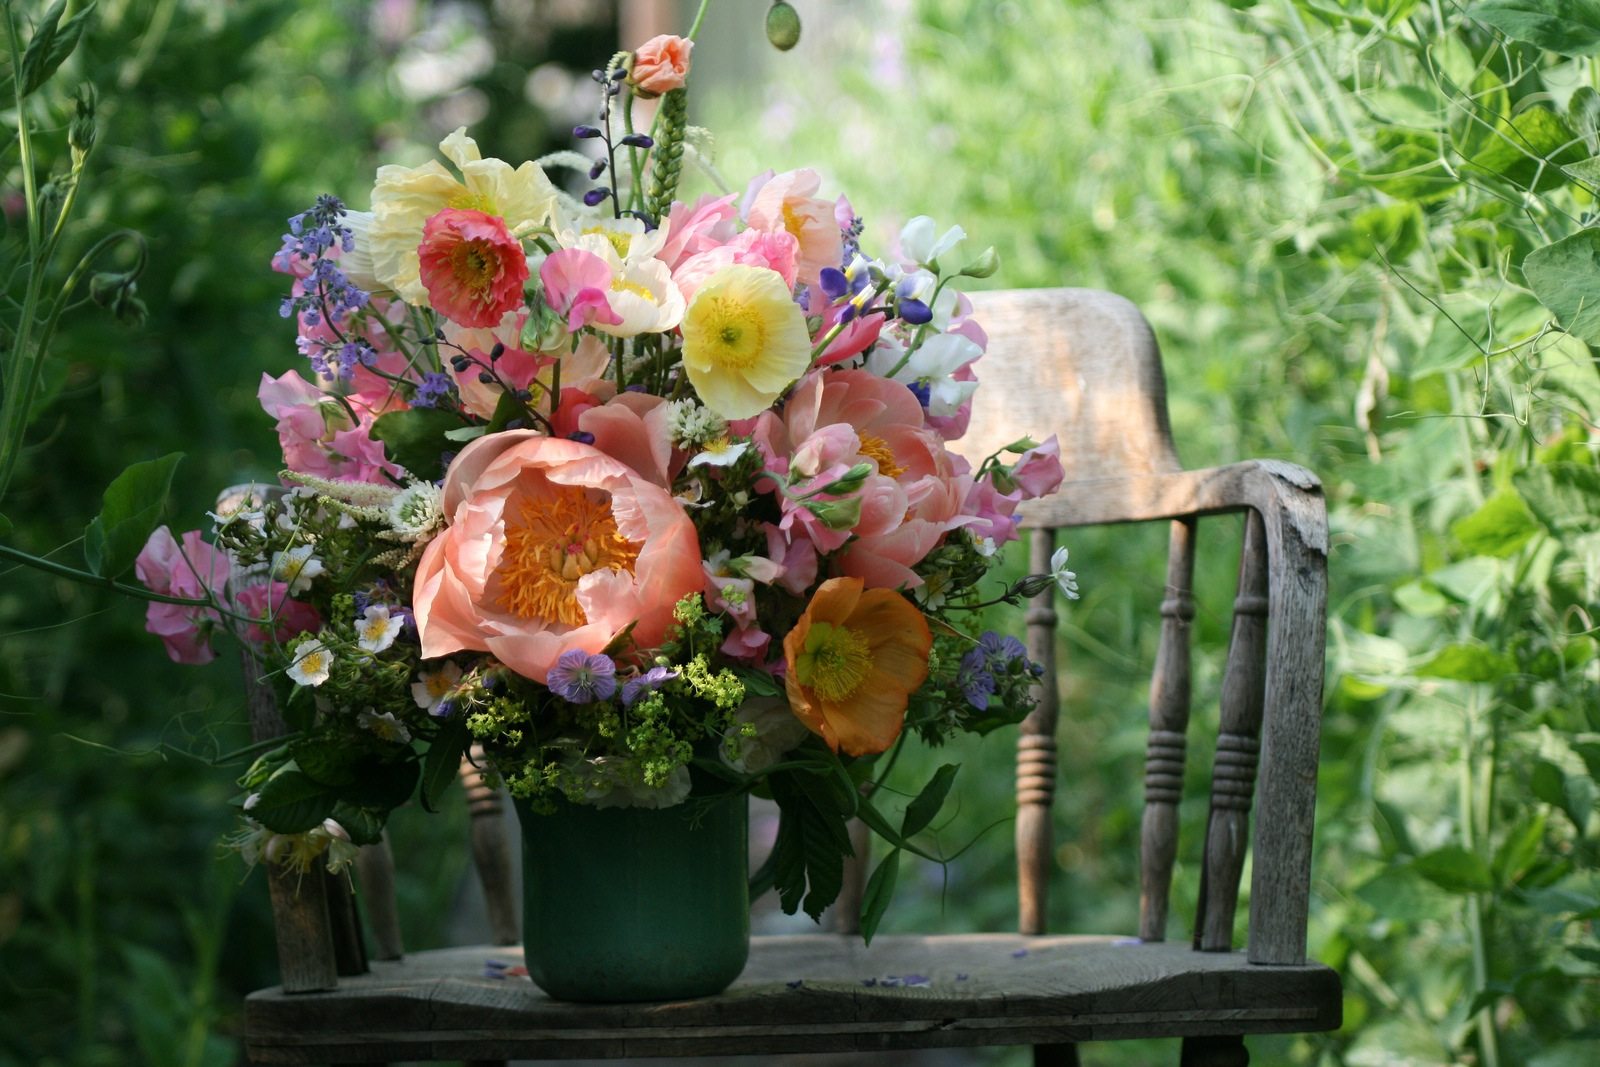 A flower arrangement on a chair